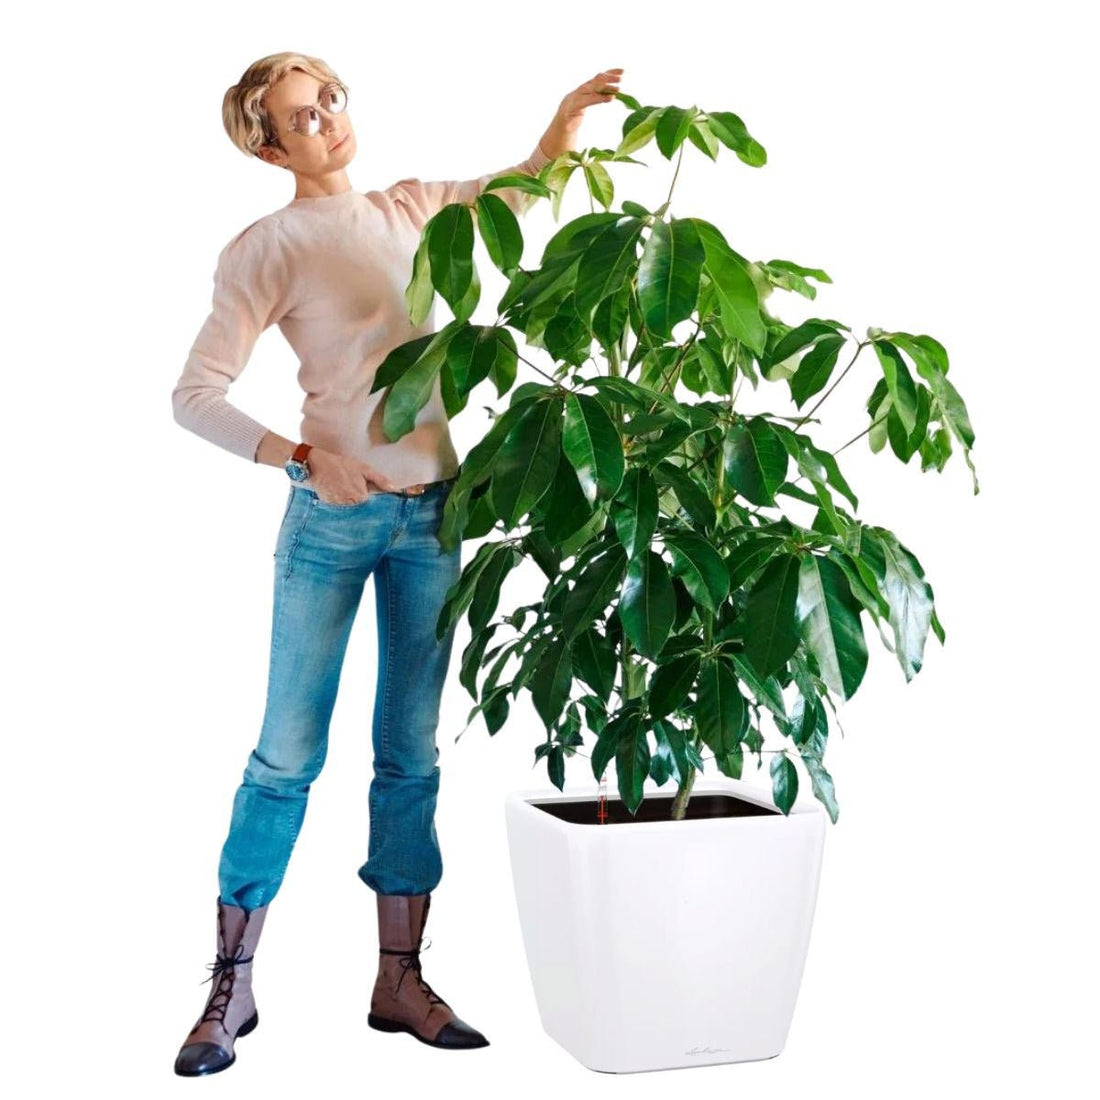 Schefflera Amate Quadro 50 - White - My City Plants